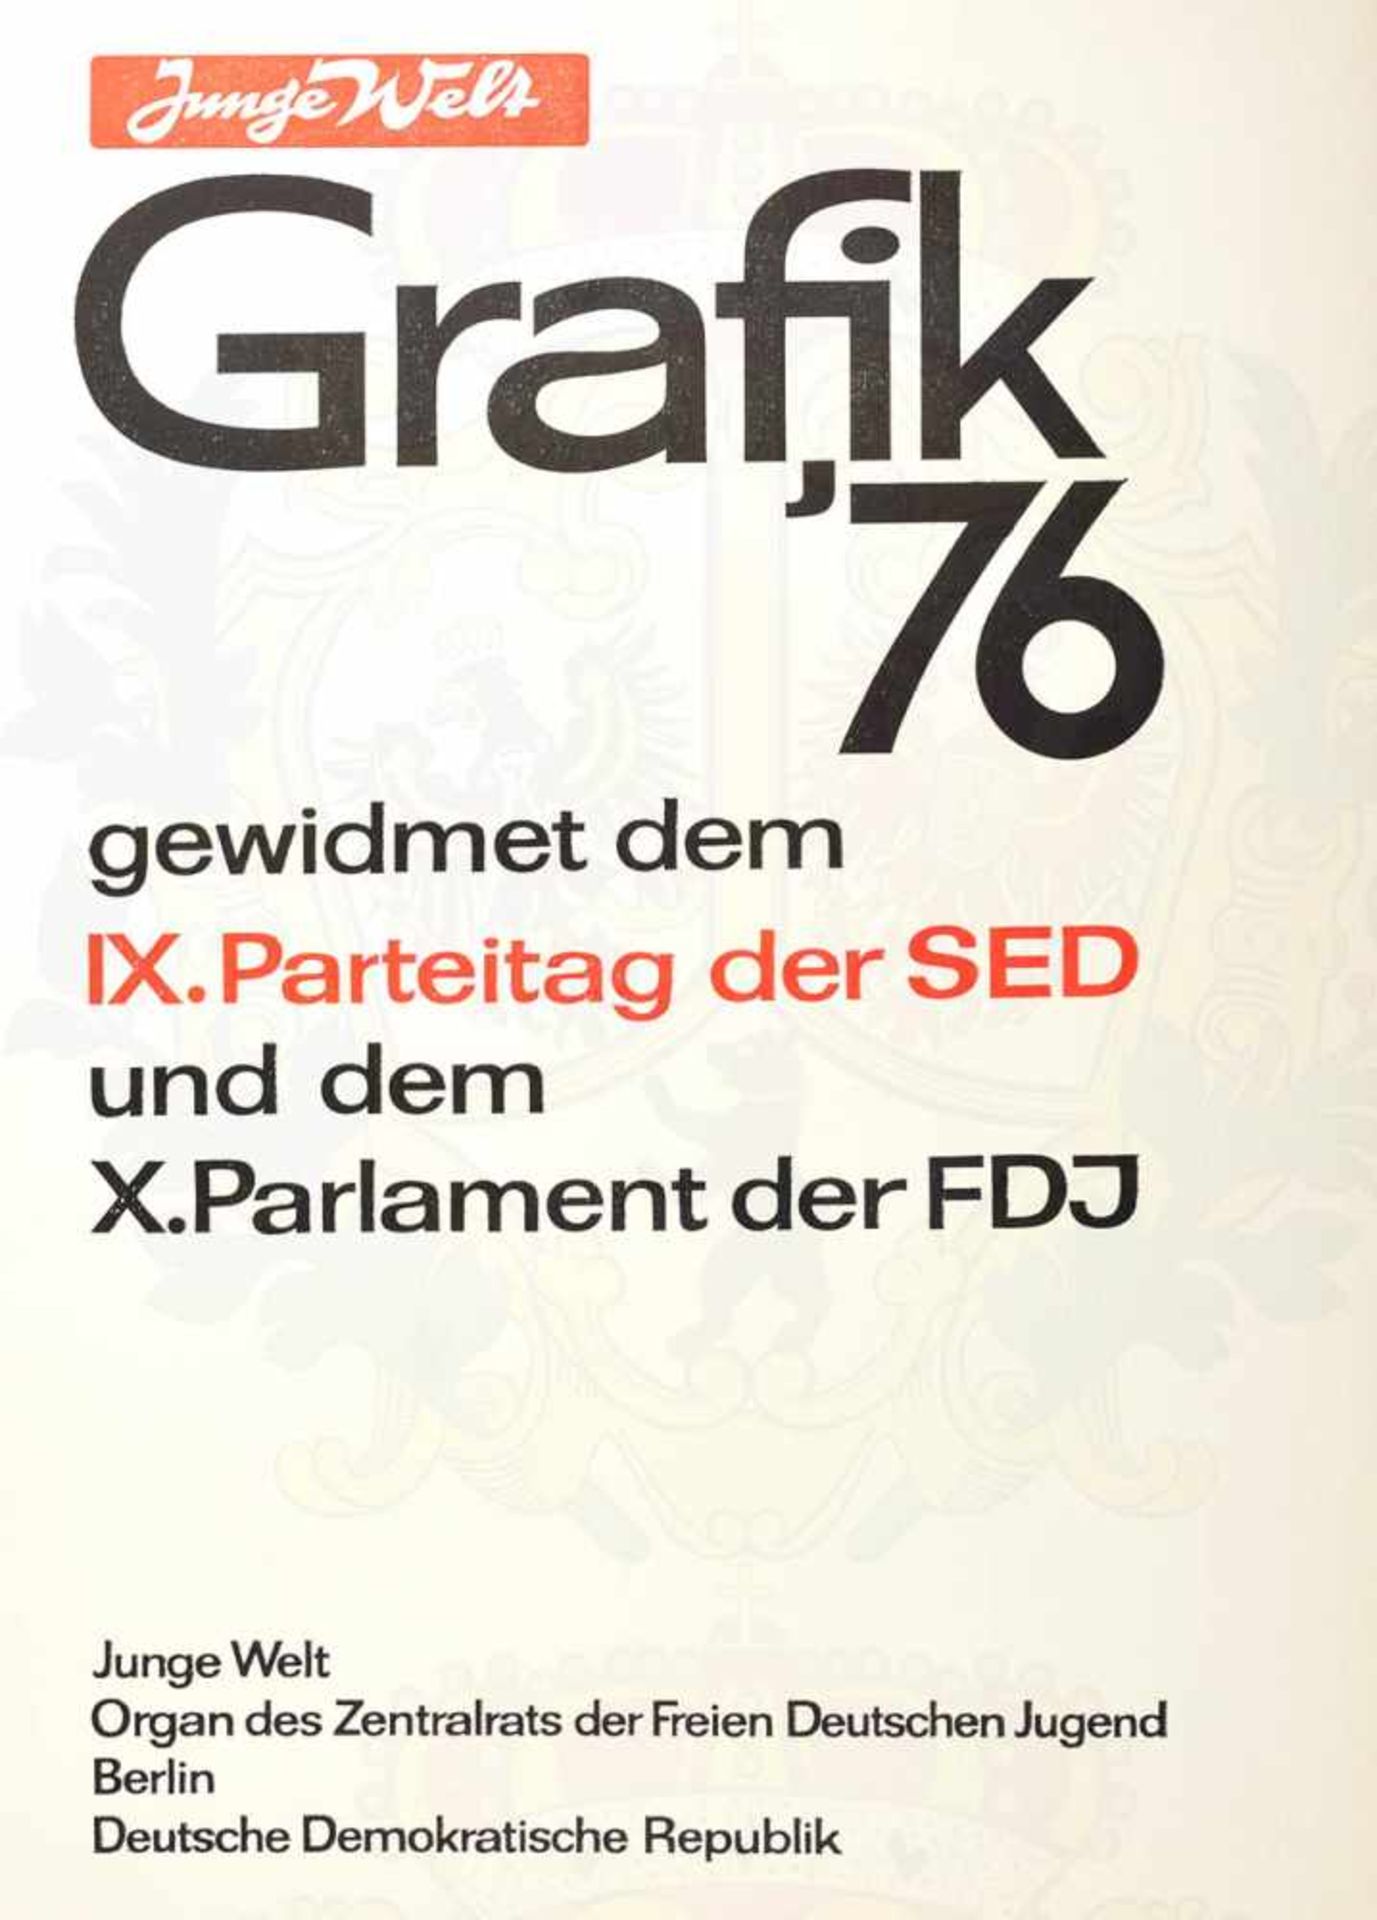 KÜNSTLERMAPPE GRAFIK 1976, 29 Blätter, Drucke, gewidmet d. IX. Parteitag der SED u. dem X. Parlament